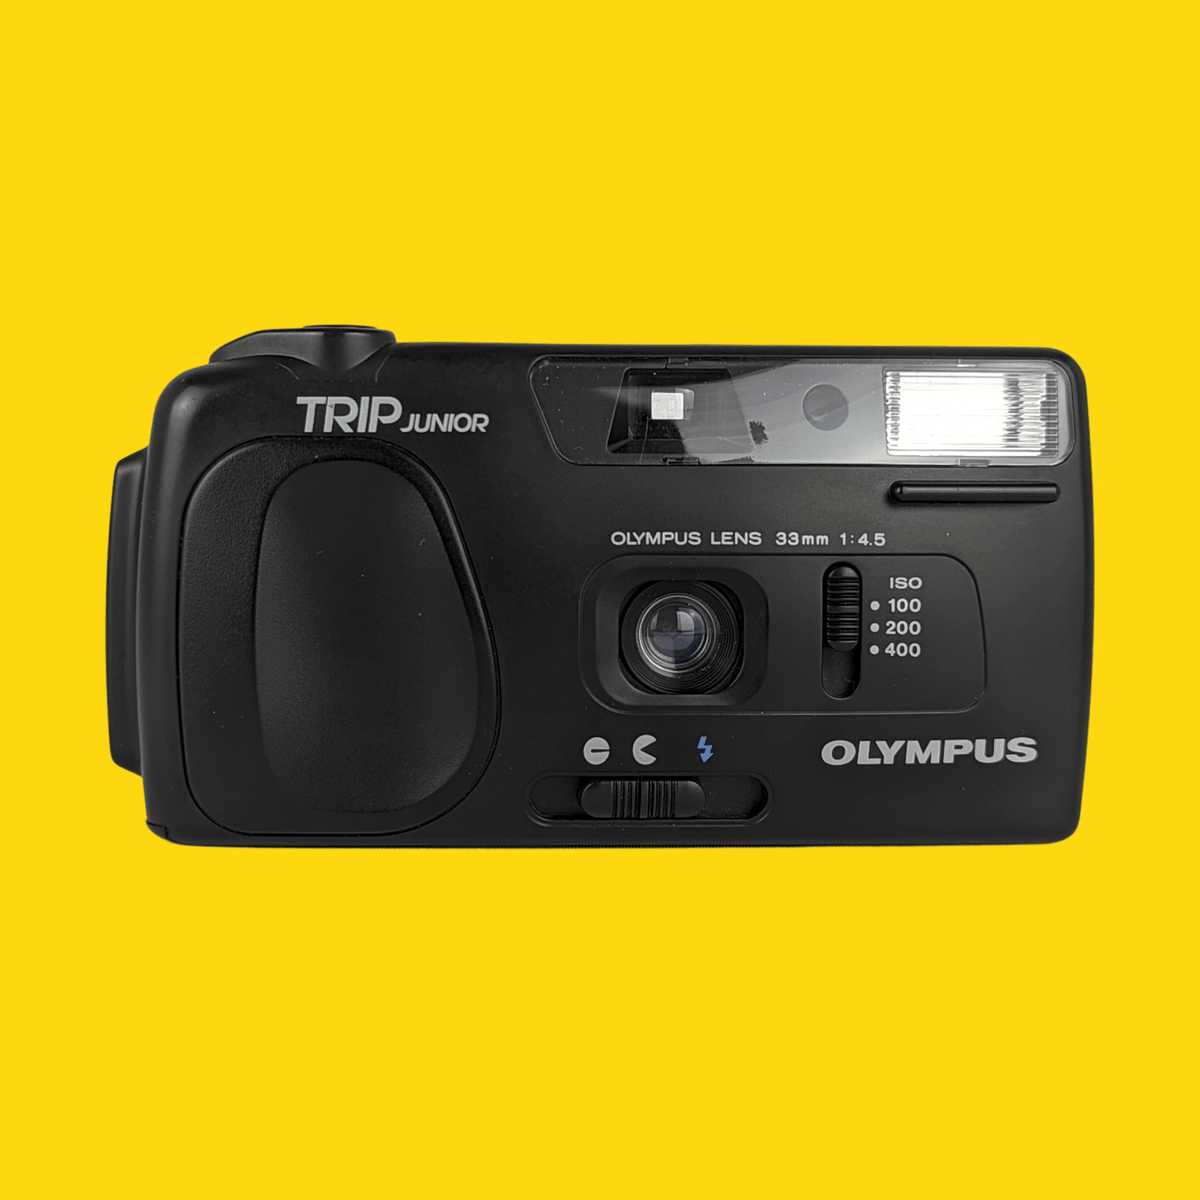 olympus trip junior camera